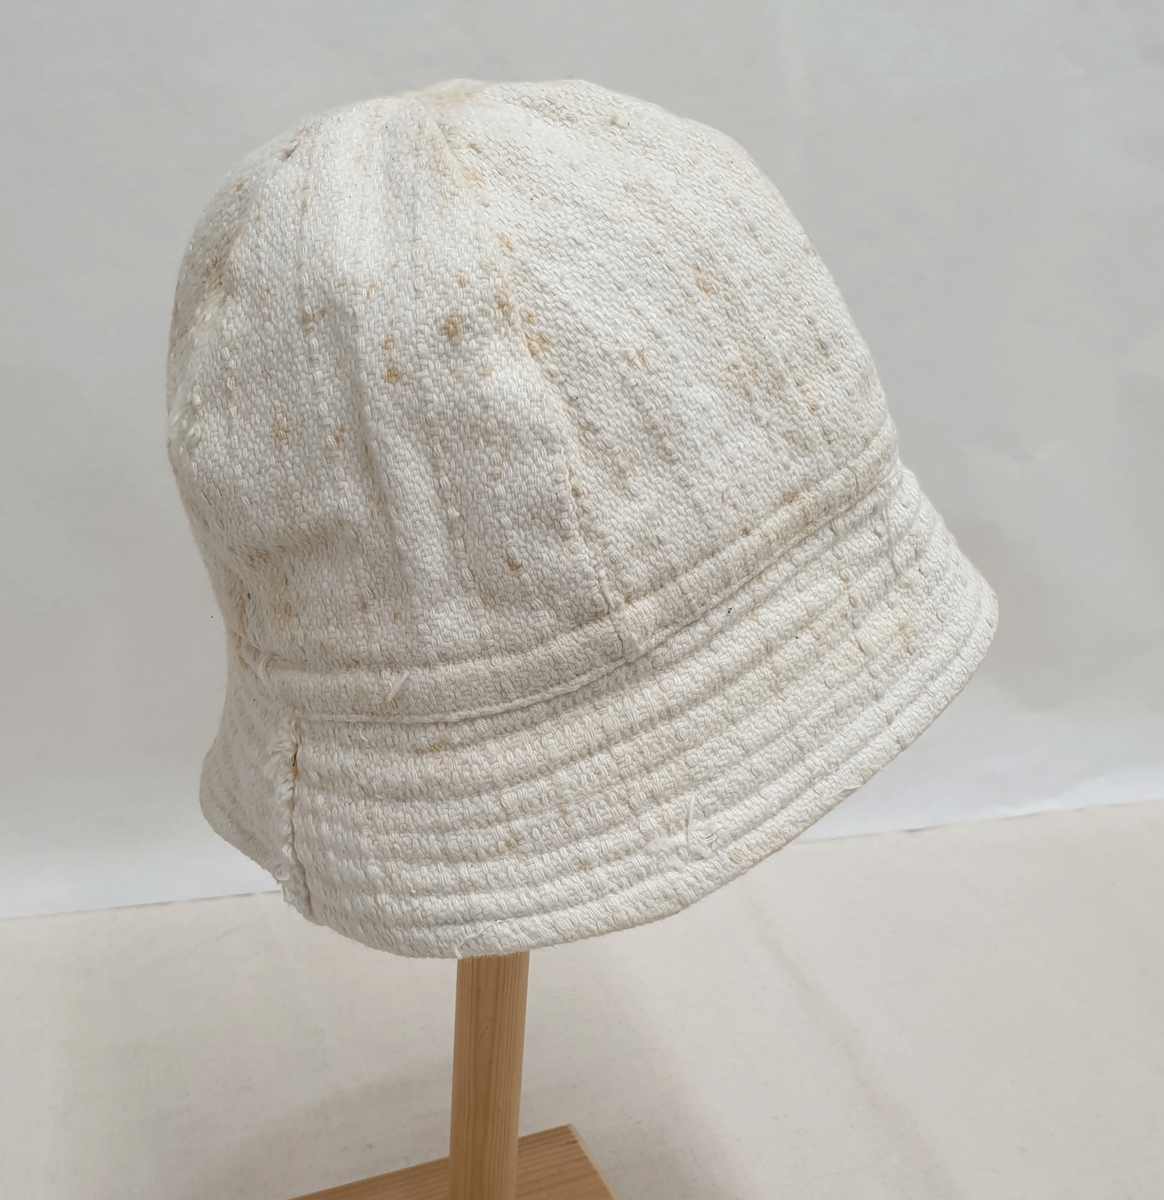 To hvite solhatter av bomull, med brem. Begge hattene er tildels skitne.